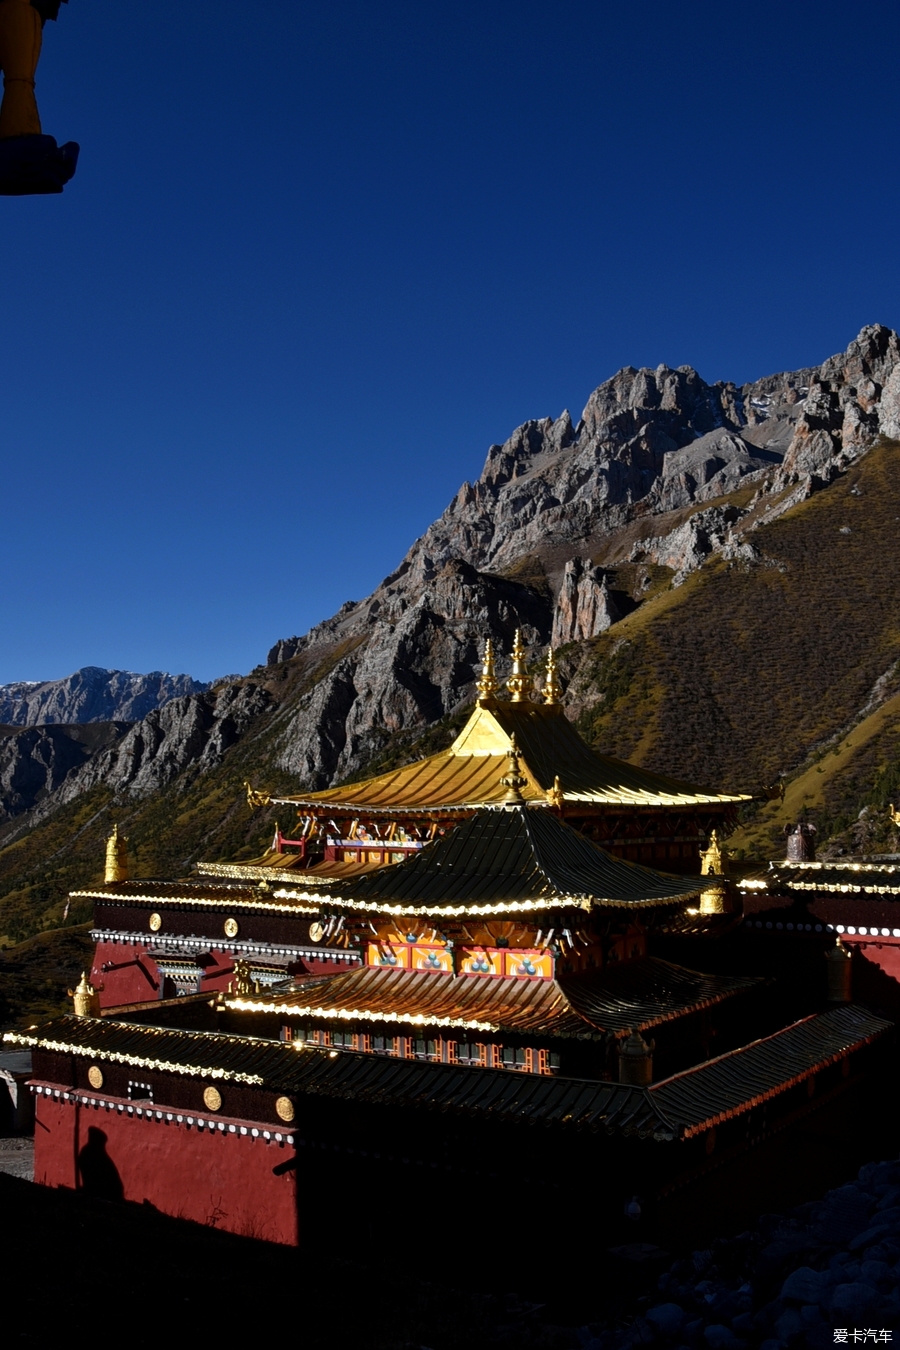 > 2017年国庆节藏区秘境:萨普神山朝拜自驾之旅  达那寺是藏区唯一